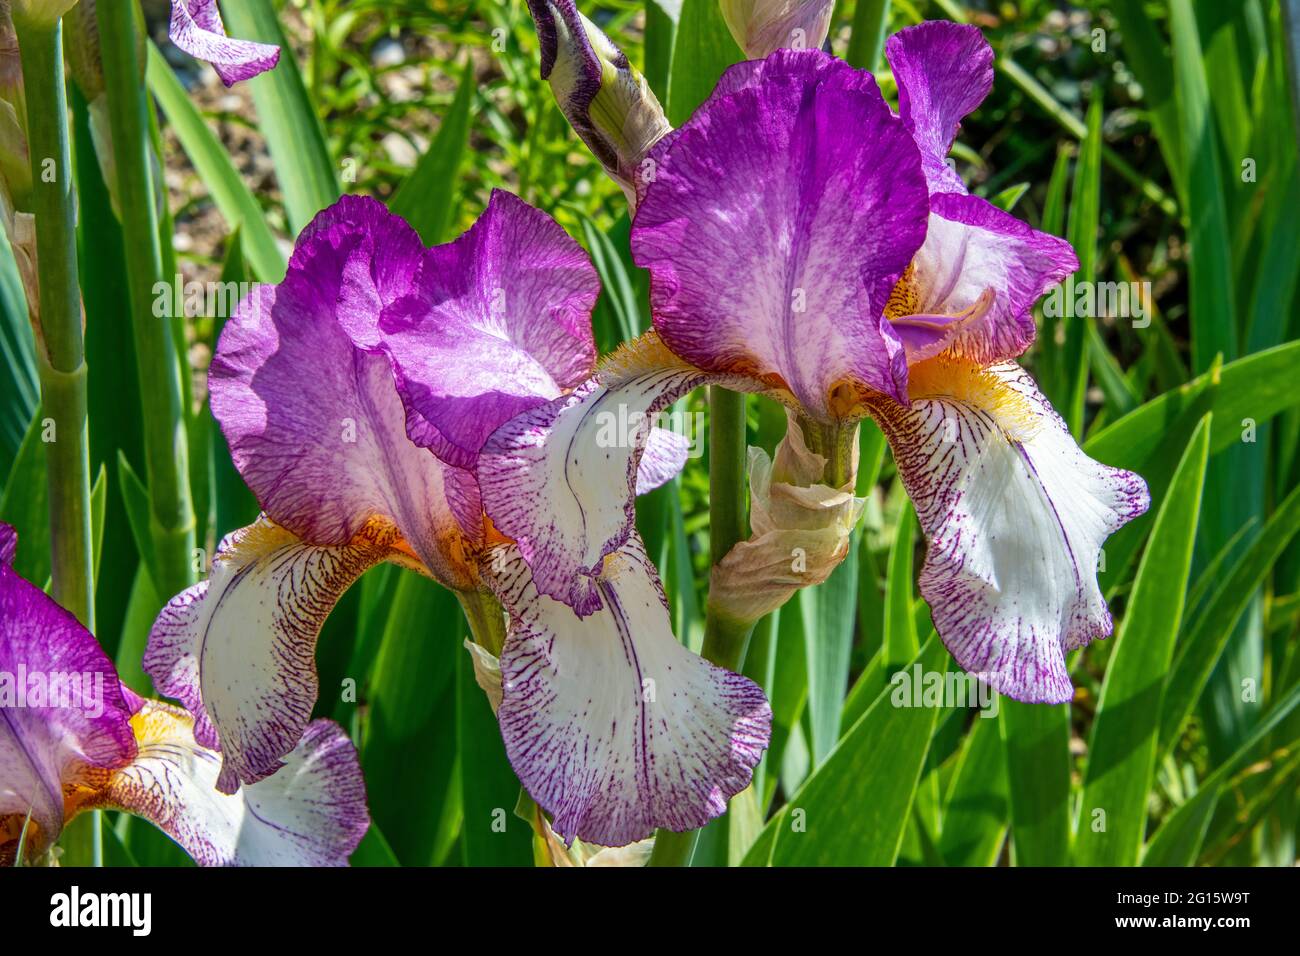 vue proche des têtes de fleurs de l'iris avec des pétales blancs et de couleur lila et des graines jaunes Banque D'Images